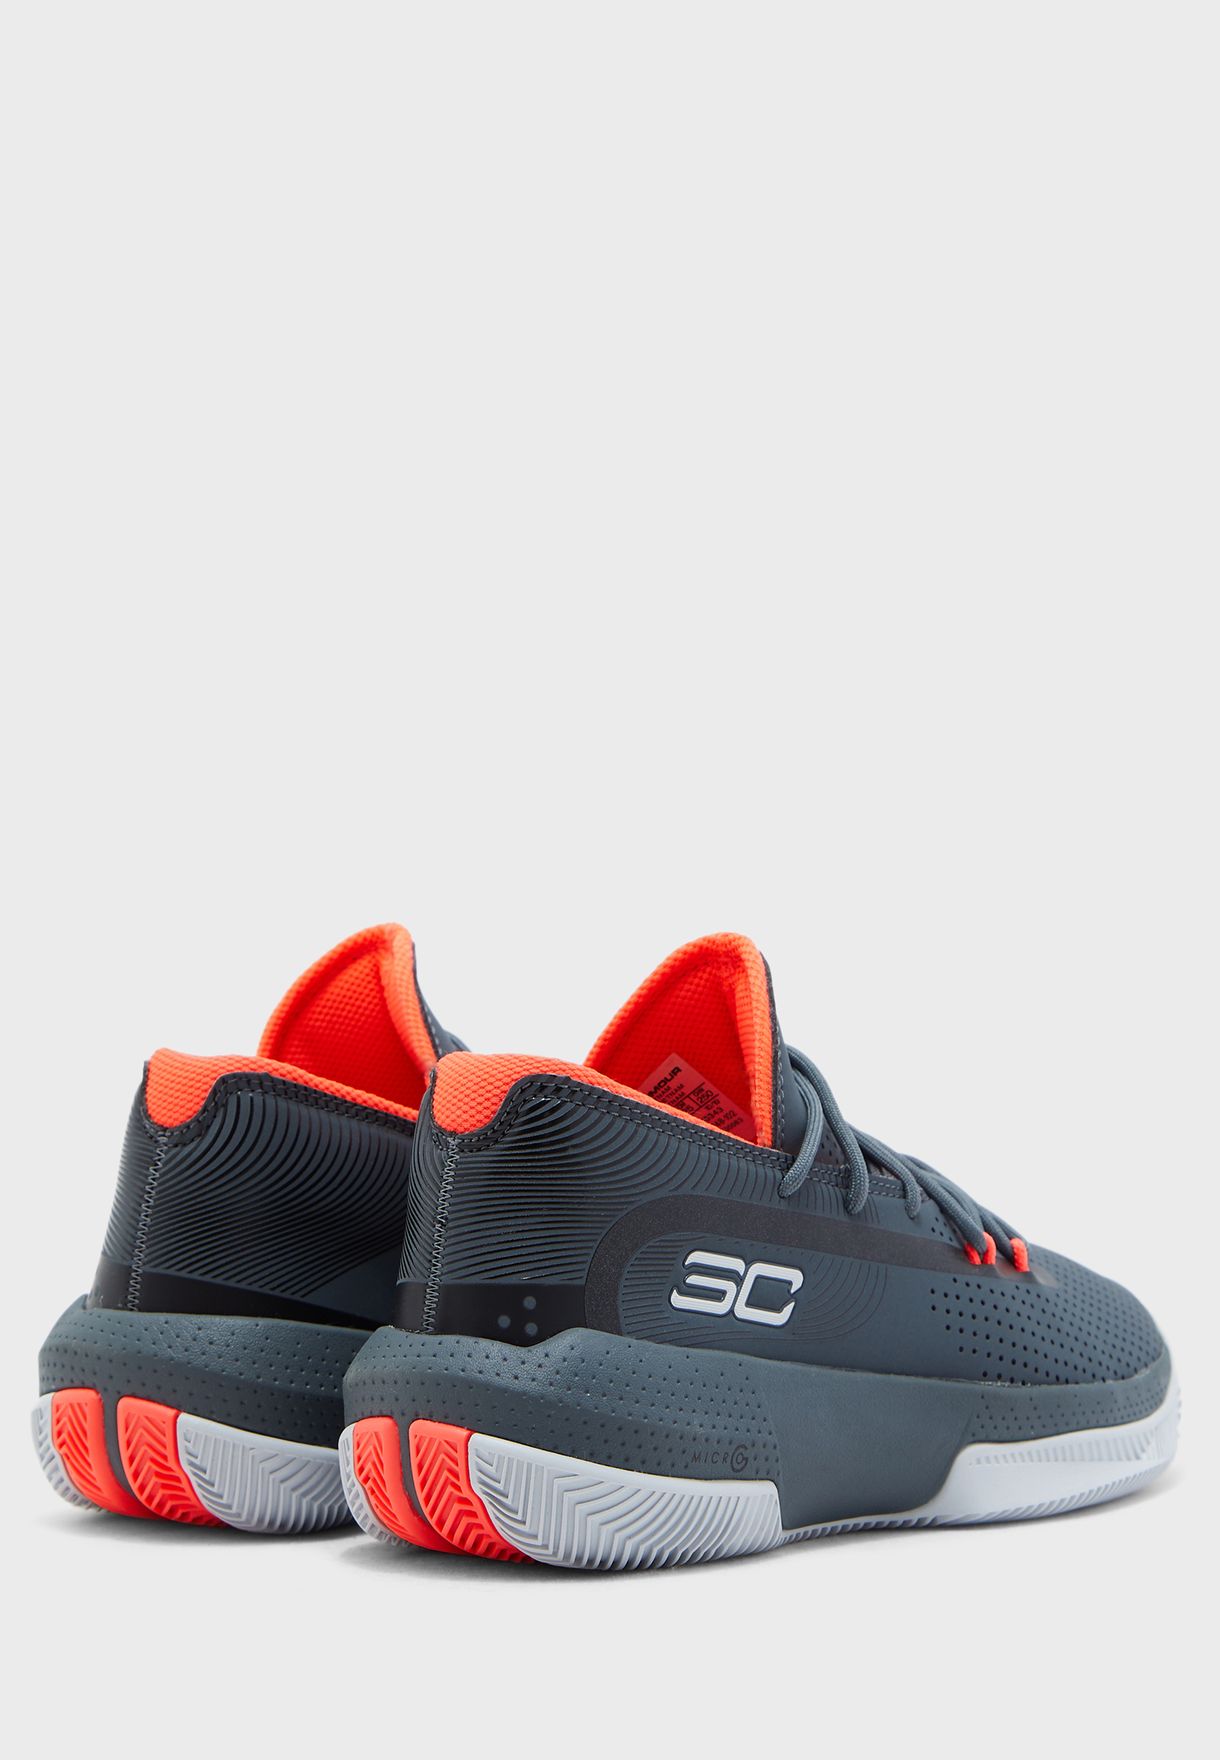 sc30 shoes